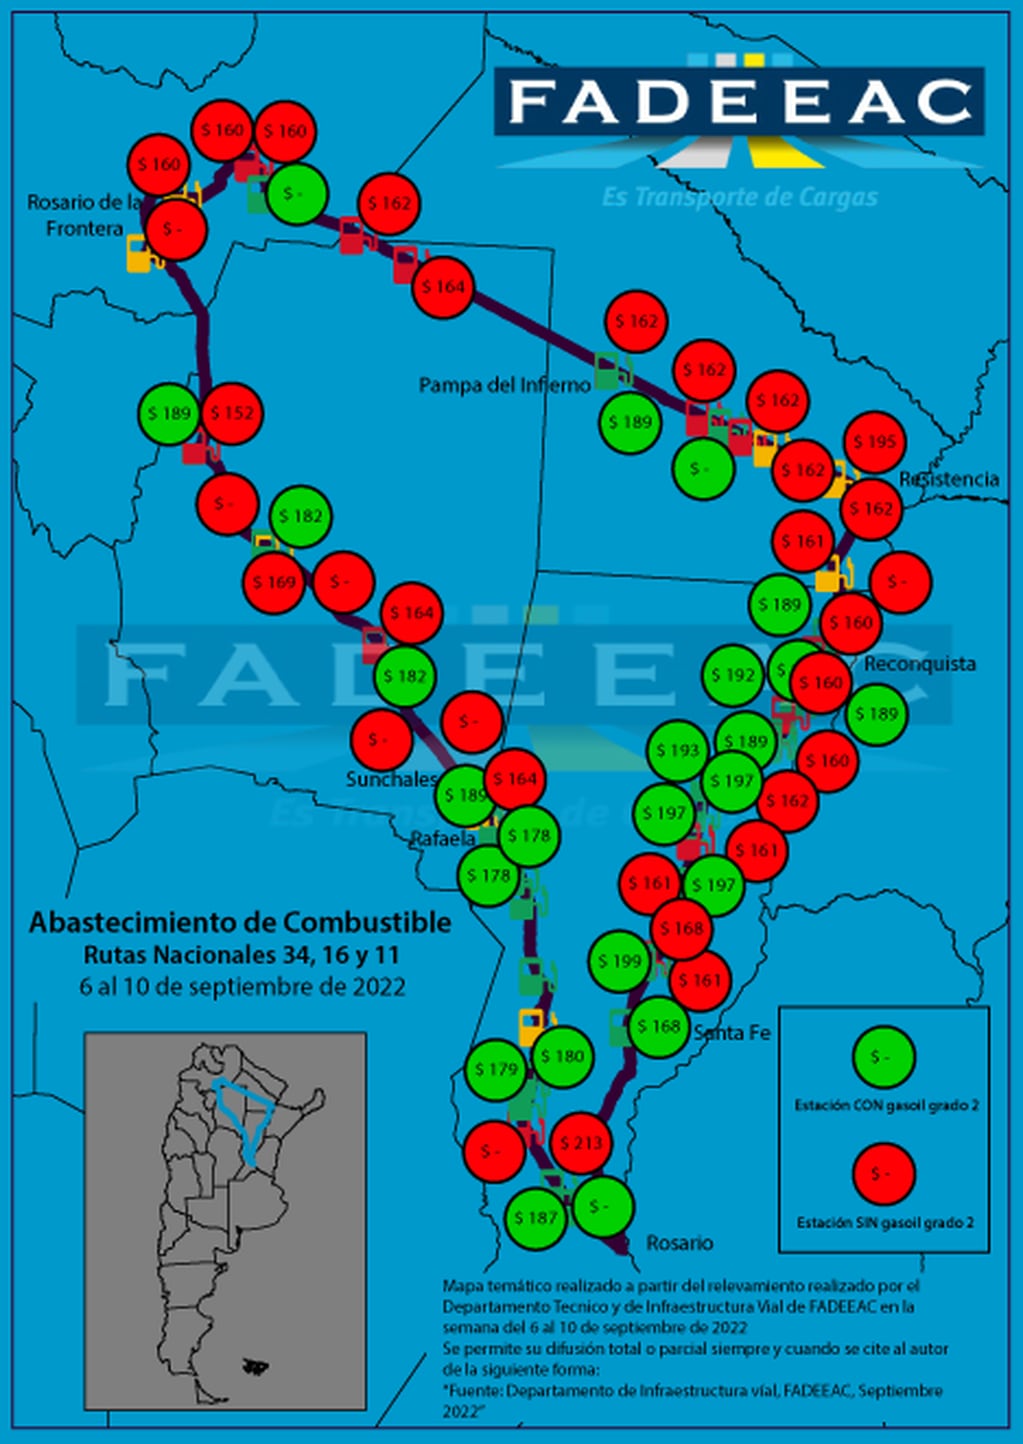 Fadeeac compartió un mapa de rutas donde hay los transportistas reportan problemas para conseguir gasoil.